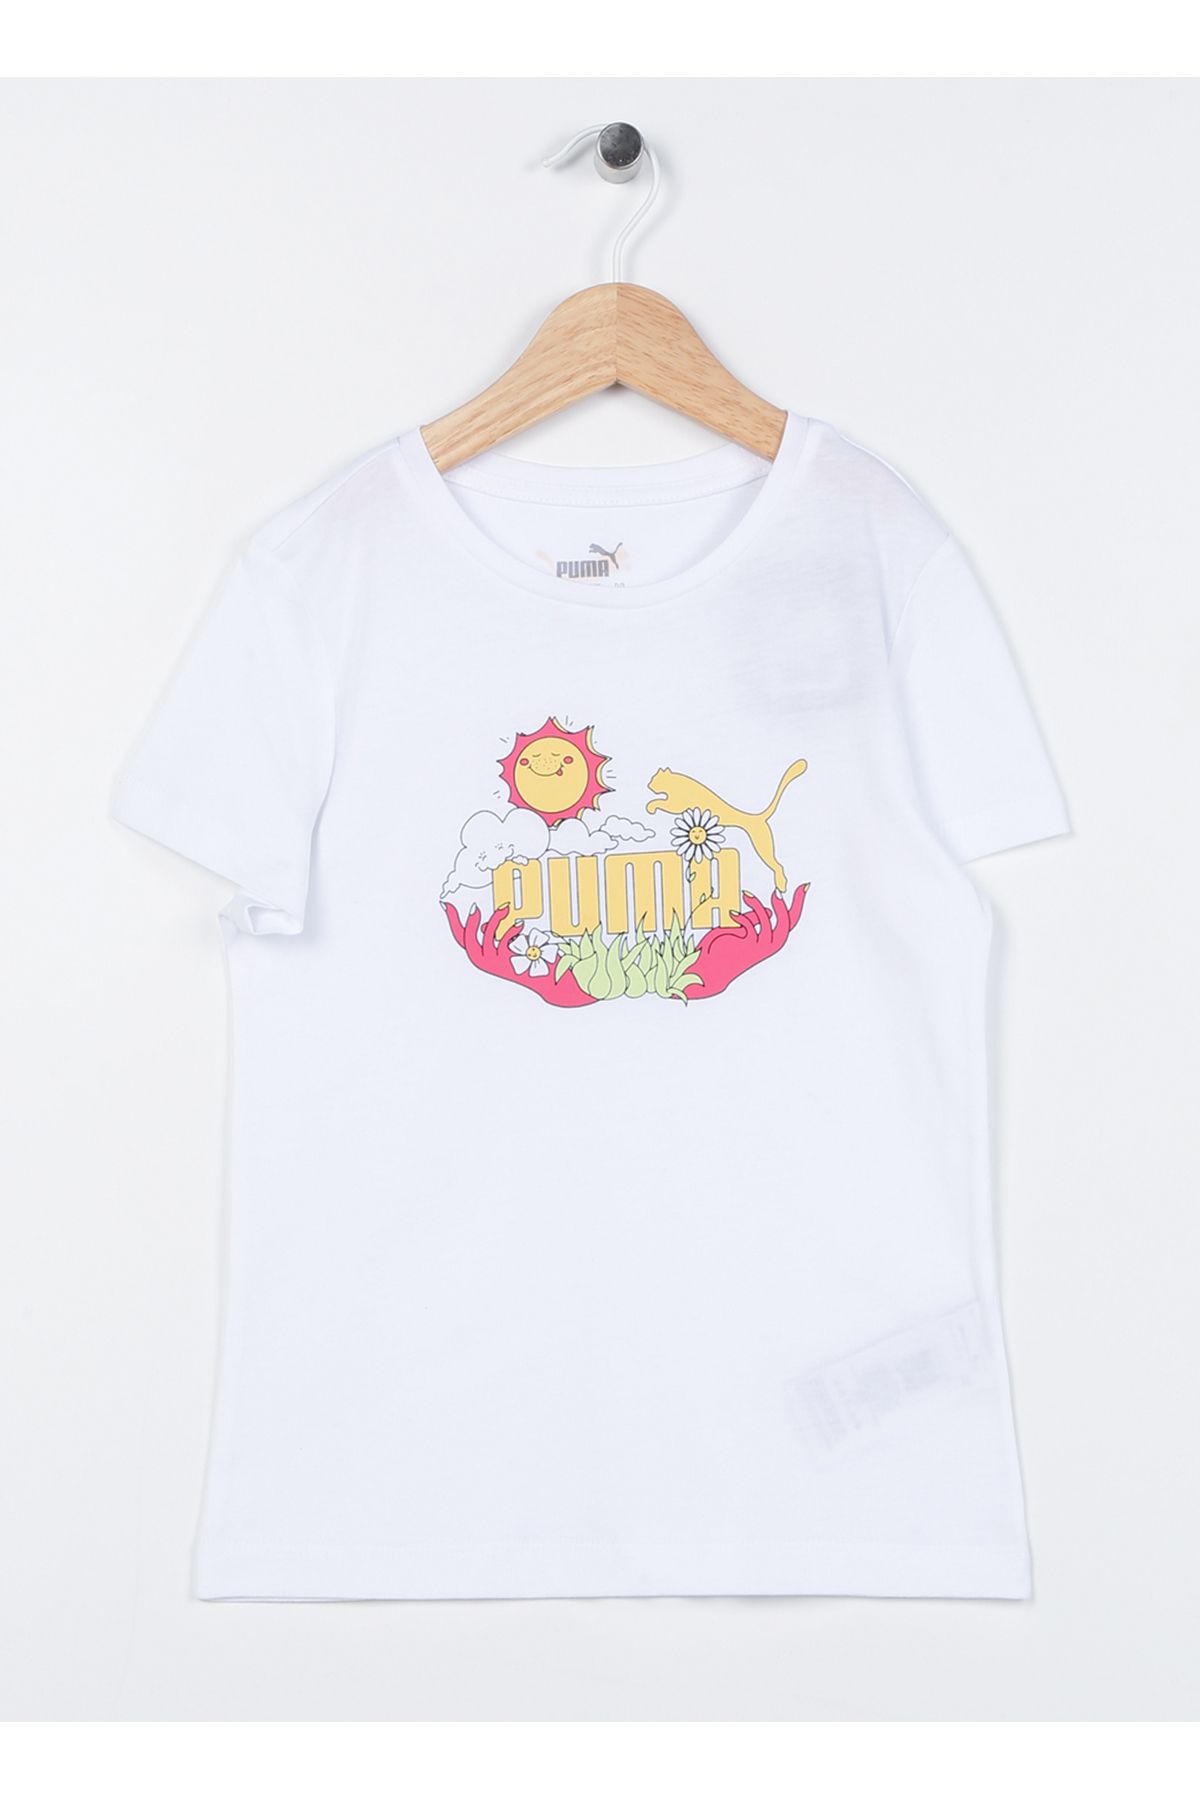 Puma Düz Beyaz Kız Çocuk T-shirt 67996703 Girl S Tee